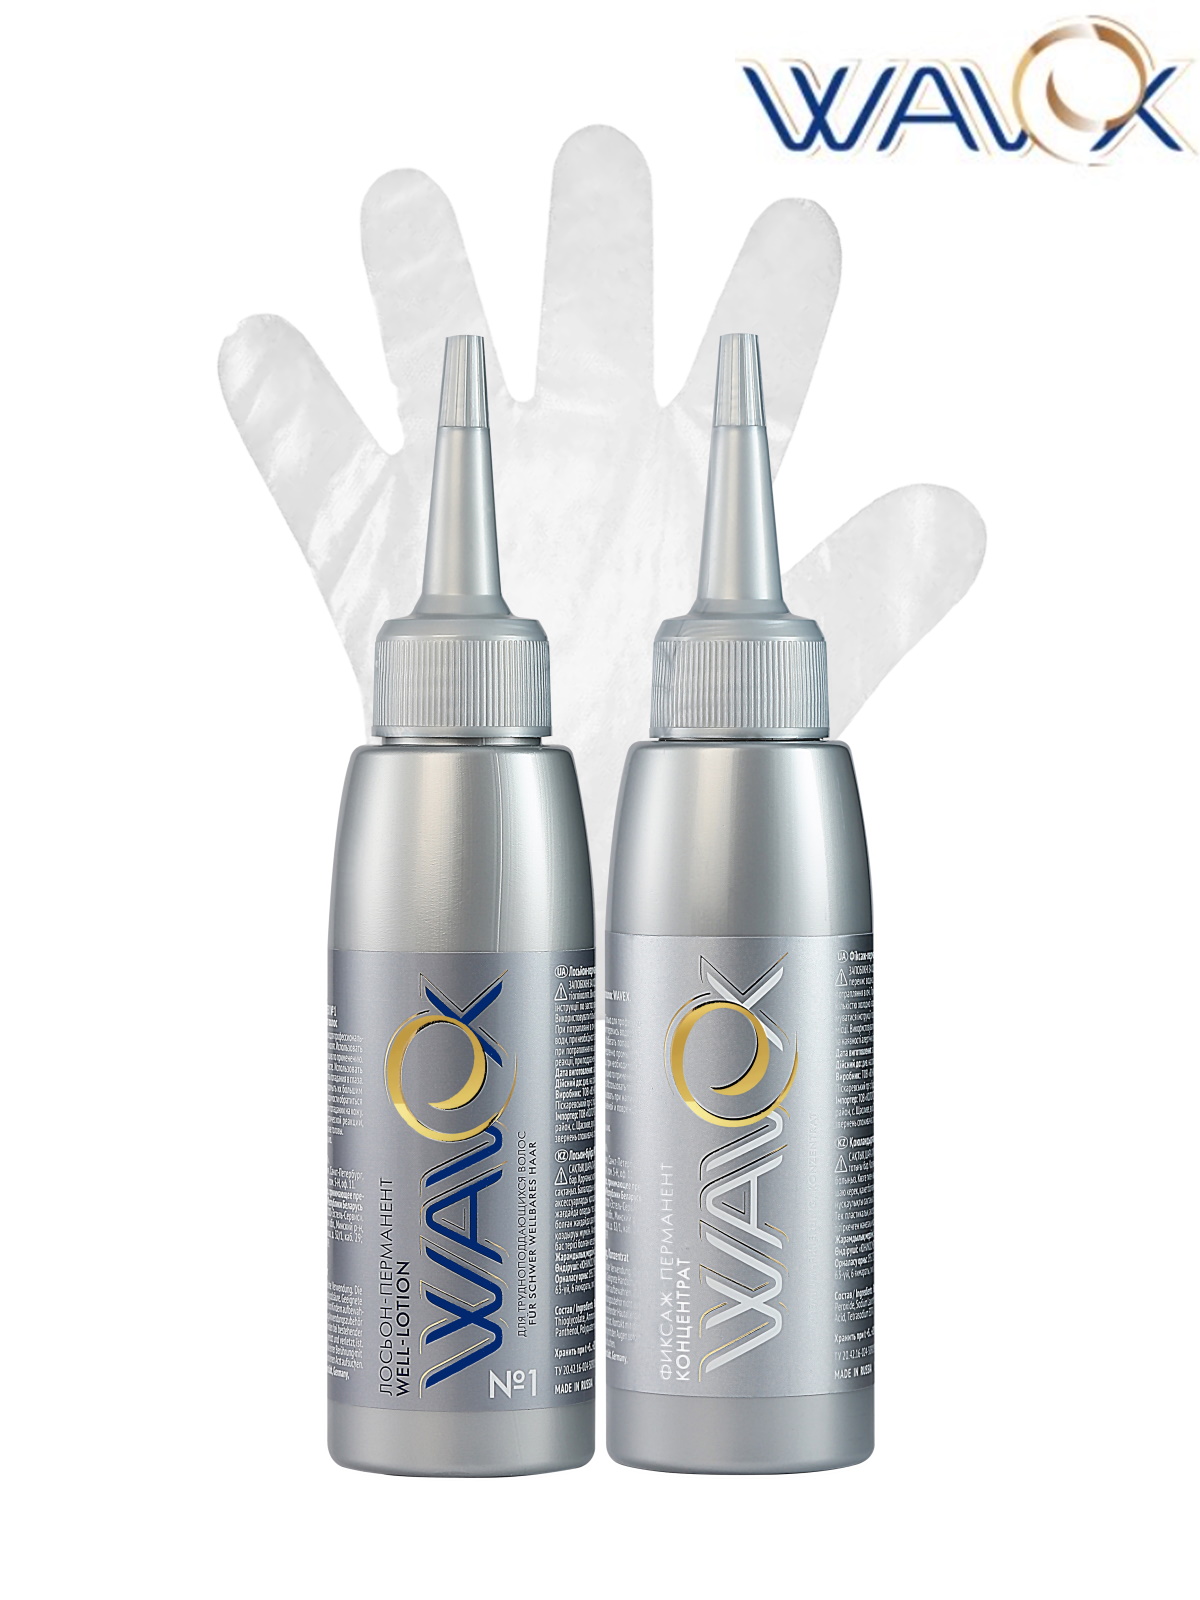 Косметический набор ESTEL Wavex для завивки волос №1 - фото 2